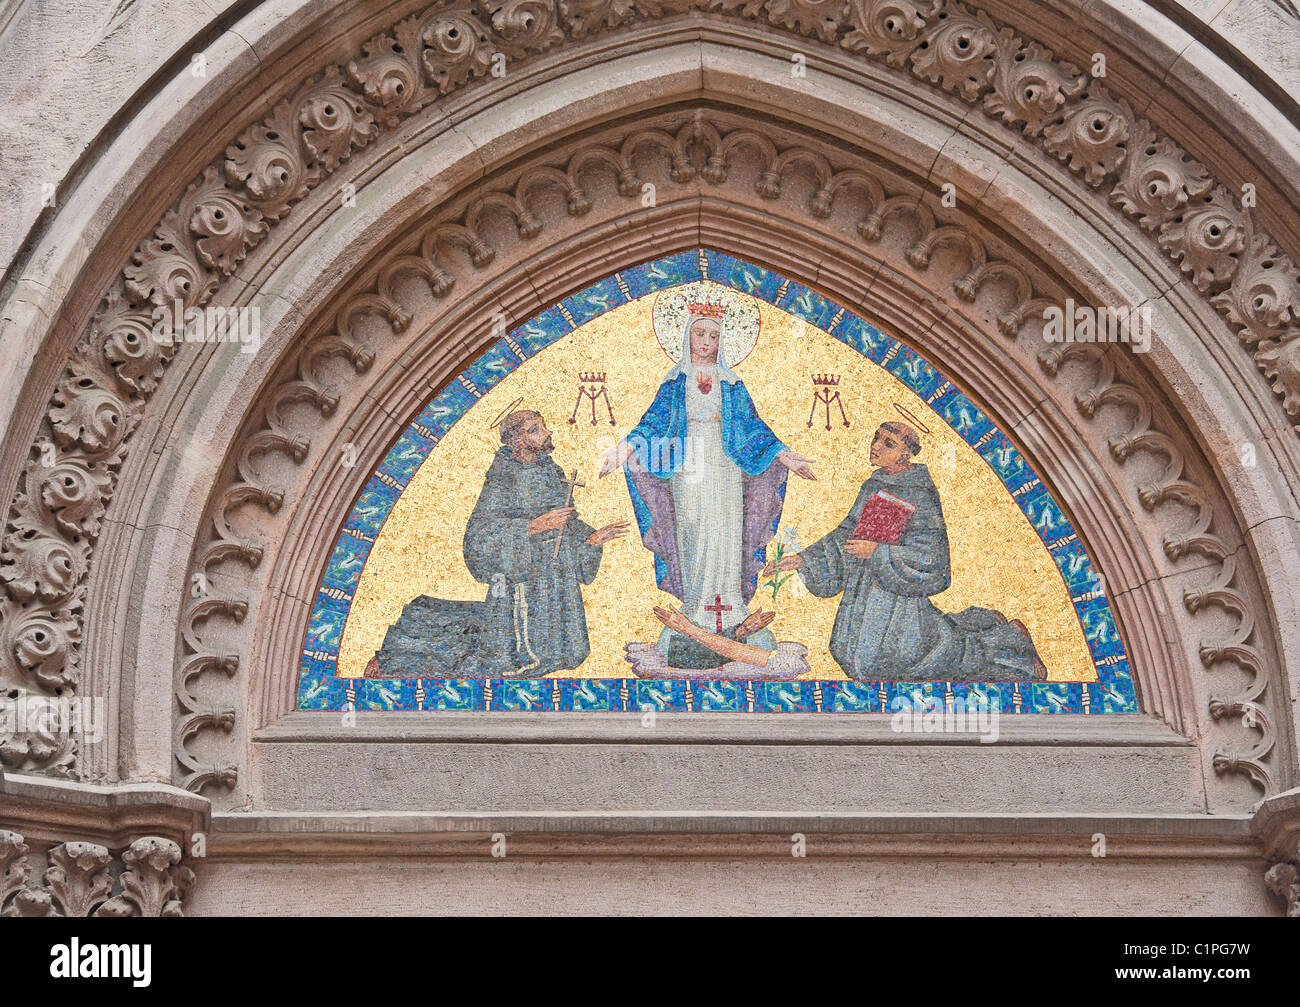 Religiöse Szene Mosaikbild über dem Eingang zur Kirche Stockfoto